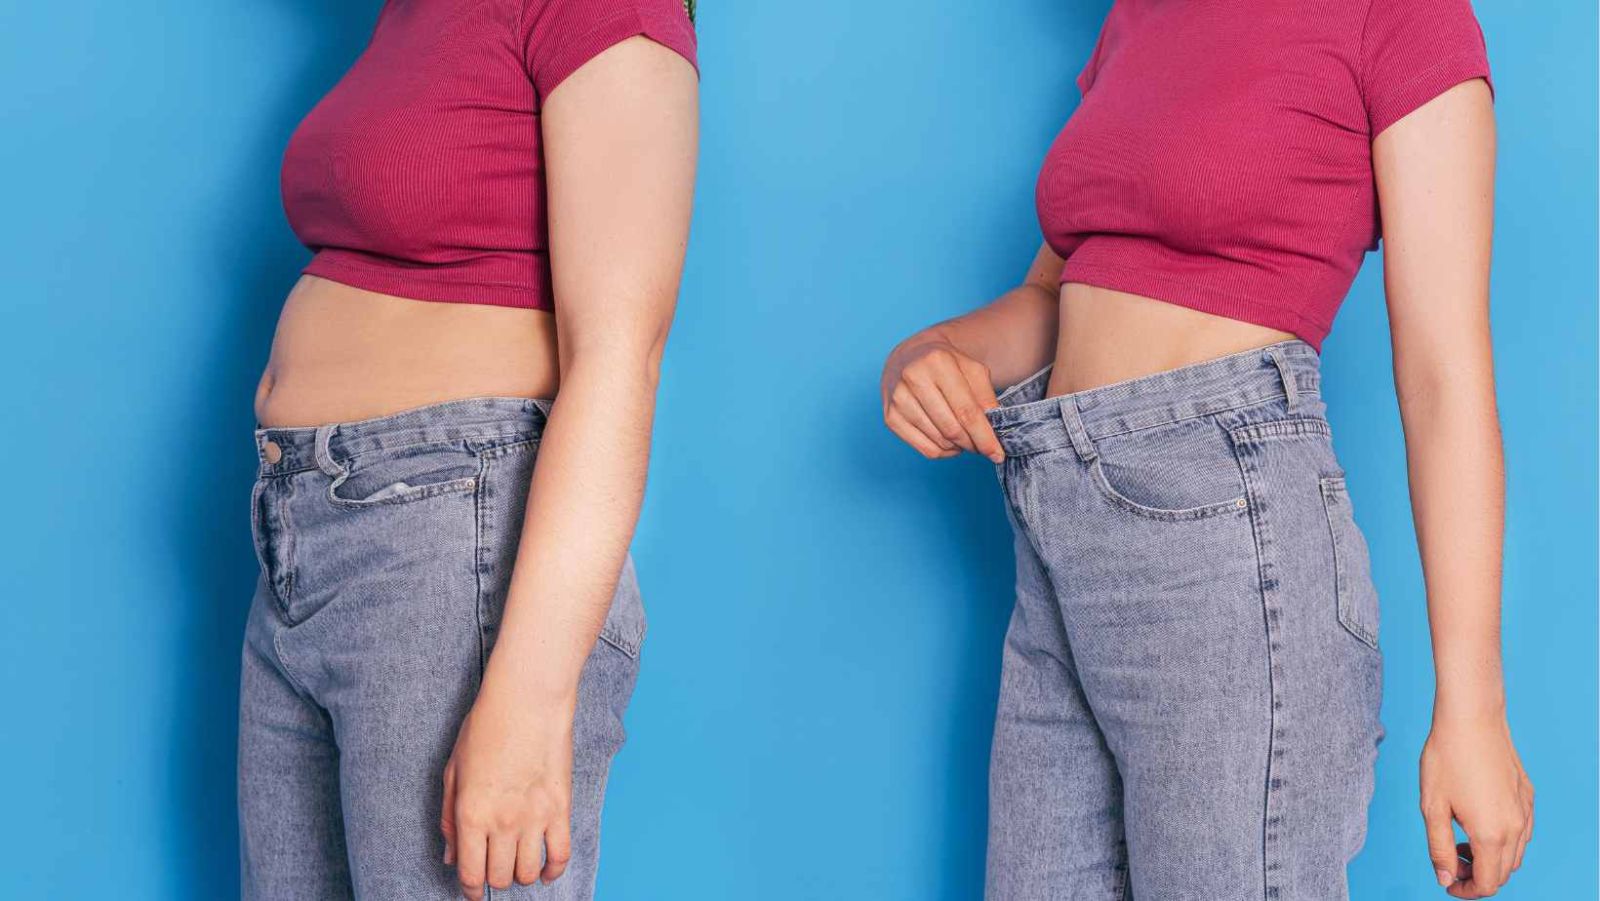 Menu de régime pour perdre 10 kilos : programme minceur efficace en 7 jours